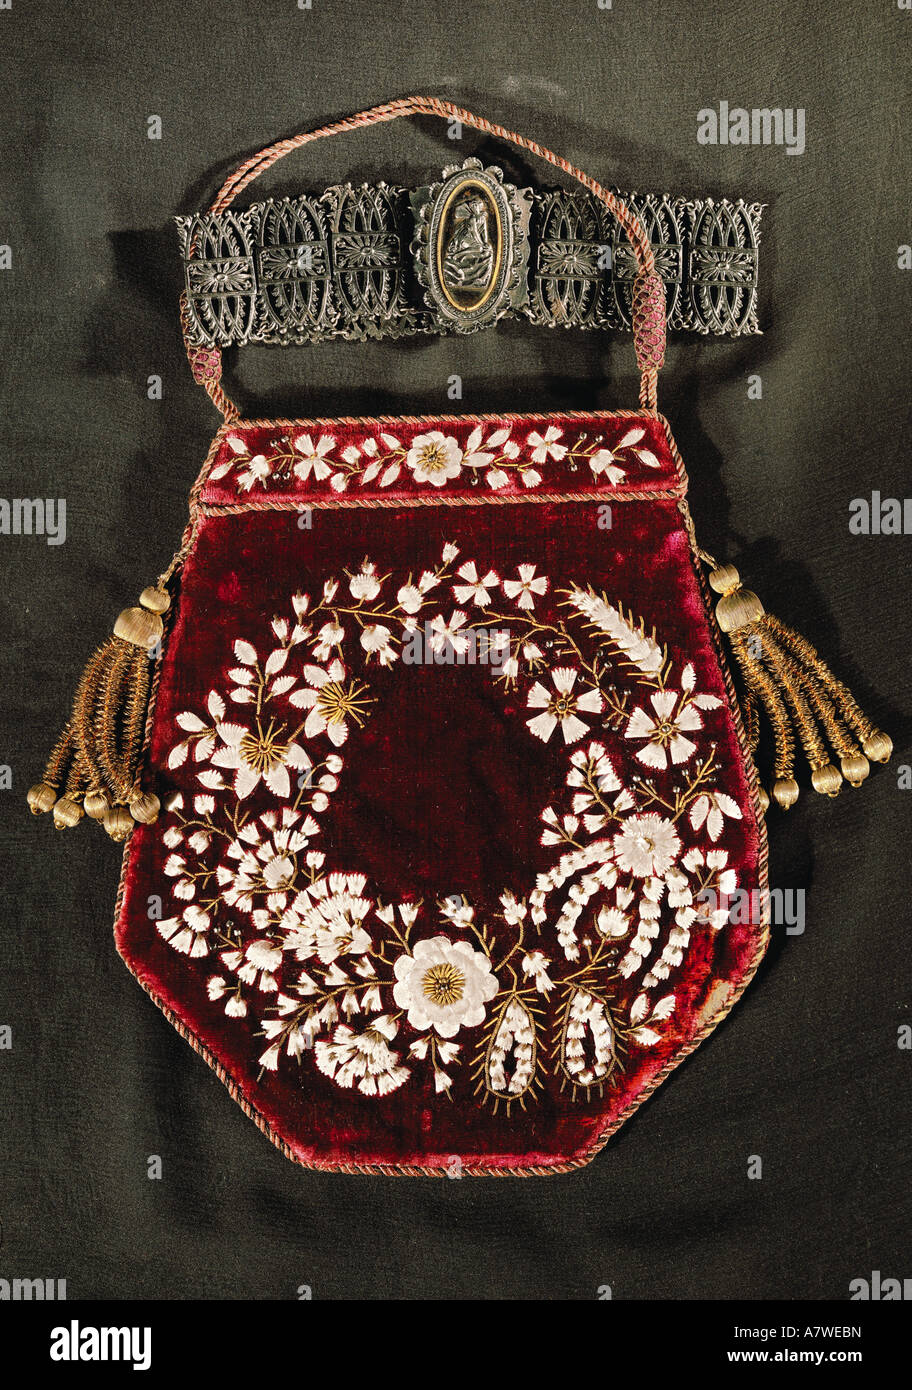 handbags, red velvet handbag sequined, collar with brooch, circa 1820, Stock Photo